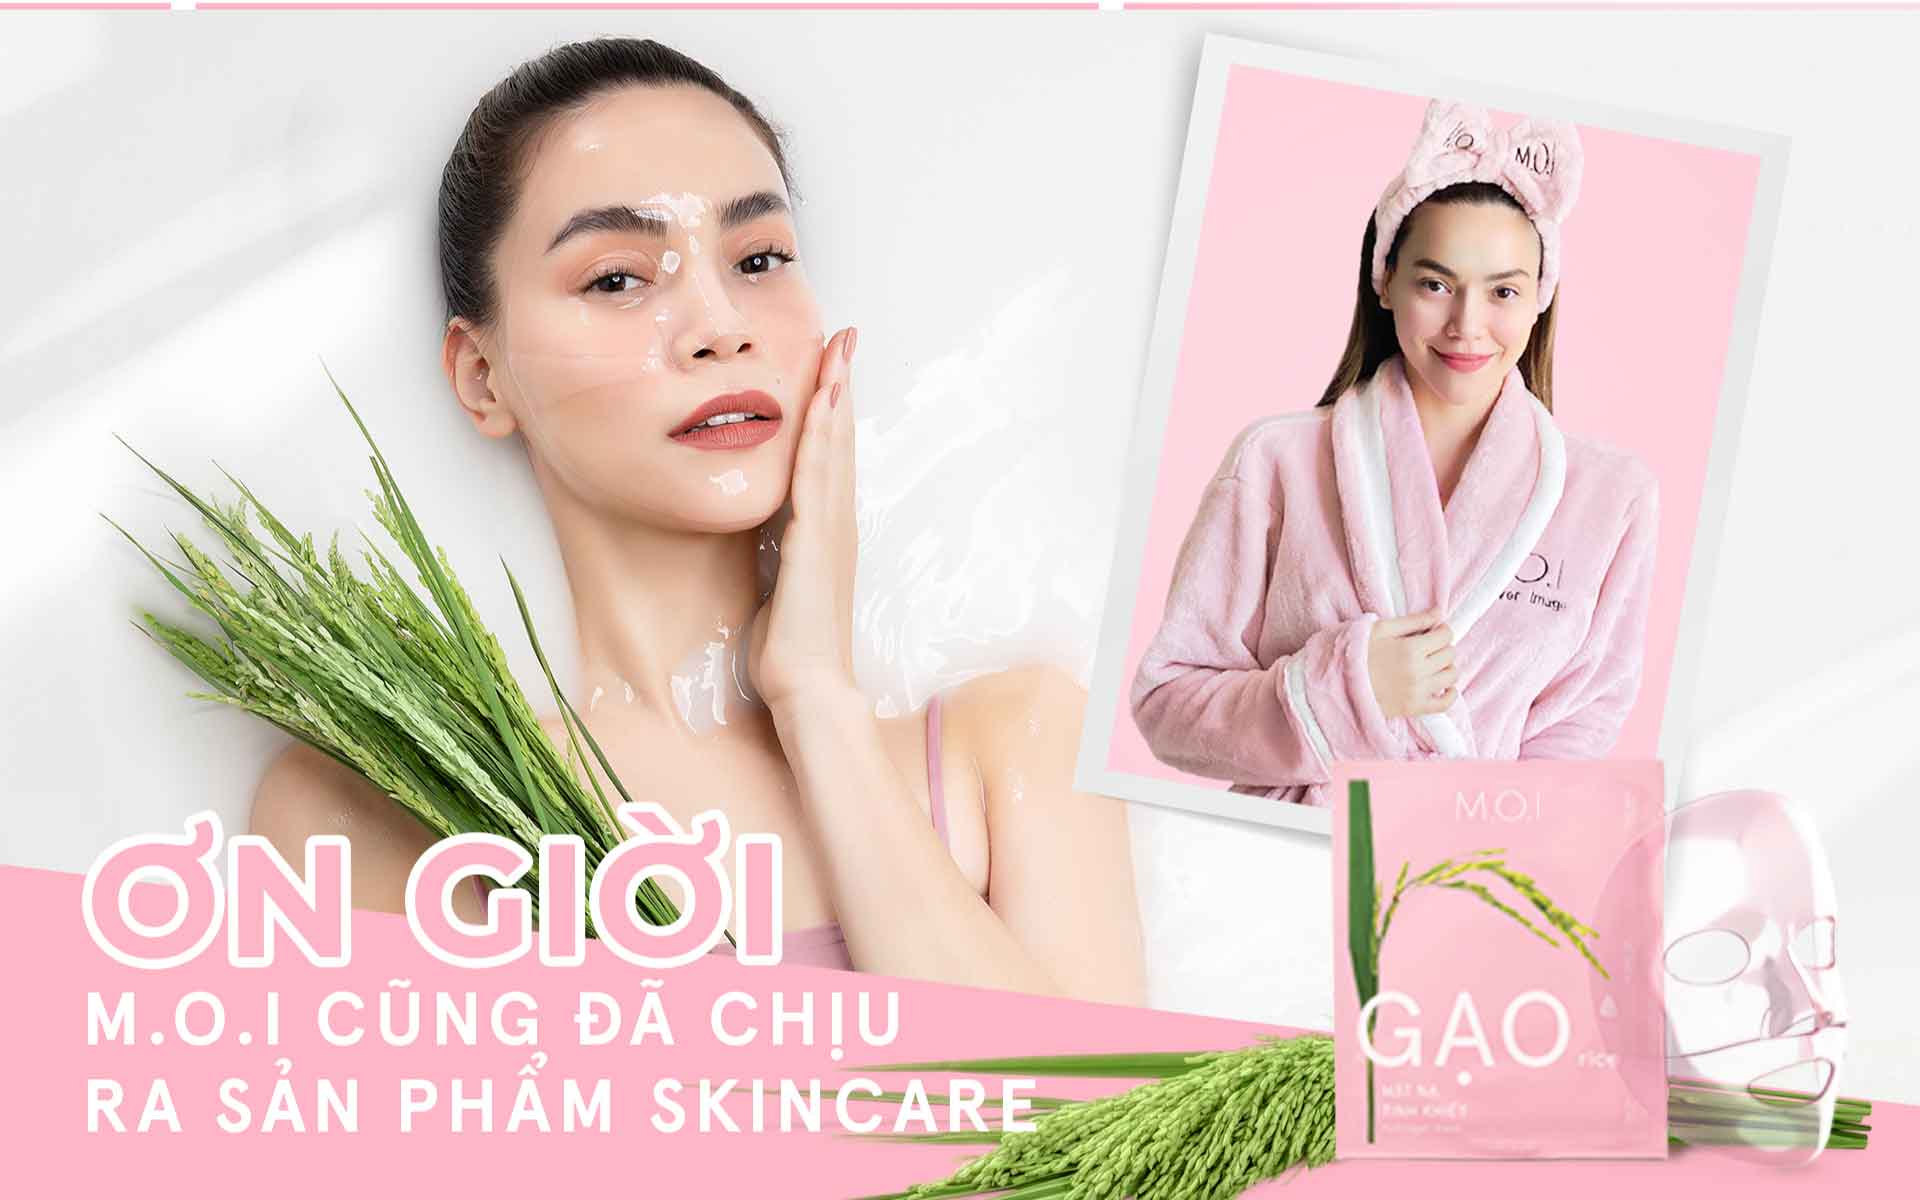 Ơn giời M.O.I Cosmetics cuối cùng cũng đã chịu ra mắt sản phẩm skincare, 